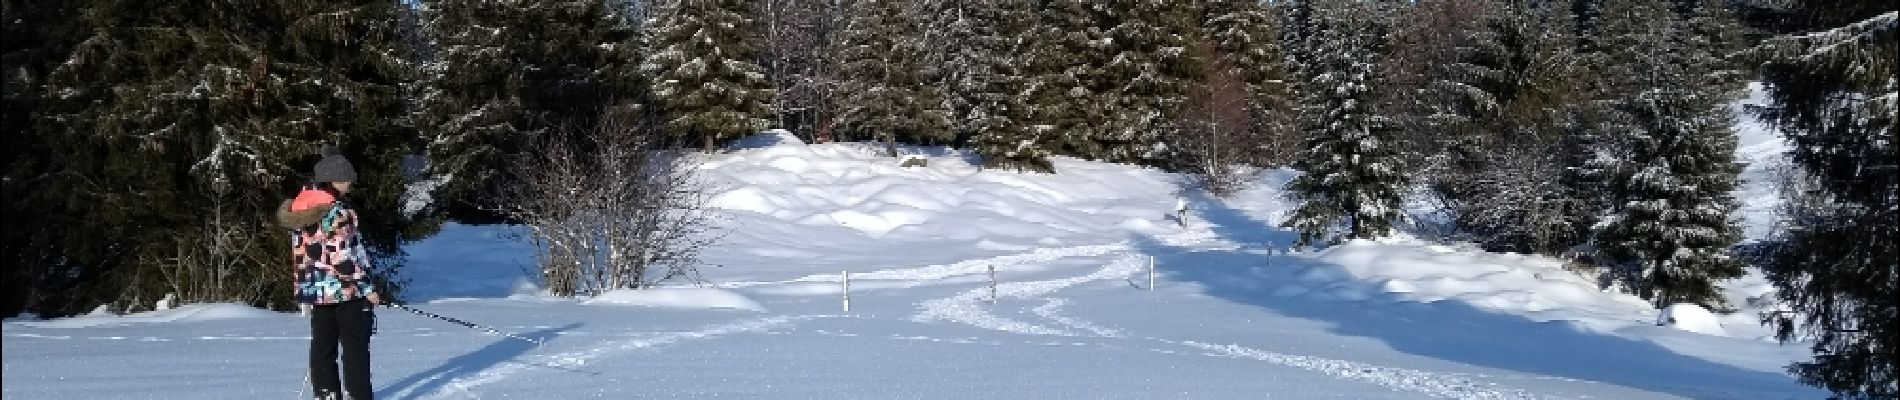 Randonnée Raquettes à neige La Bresse - 19-01-2019 Col de grosse Pierre - Photo